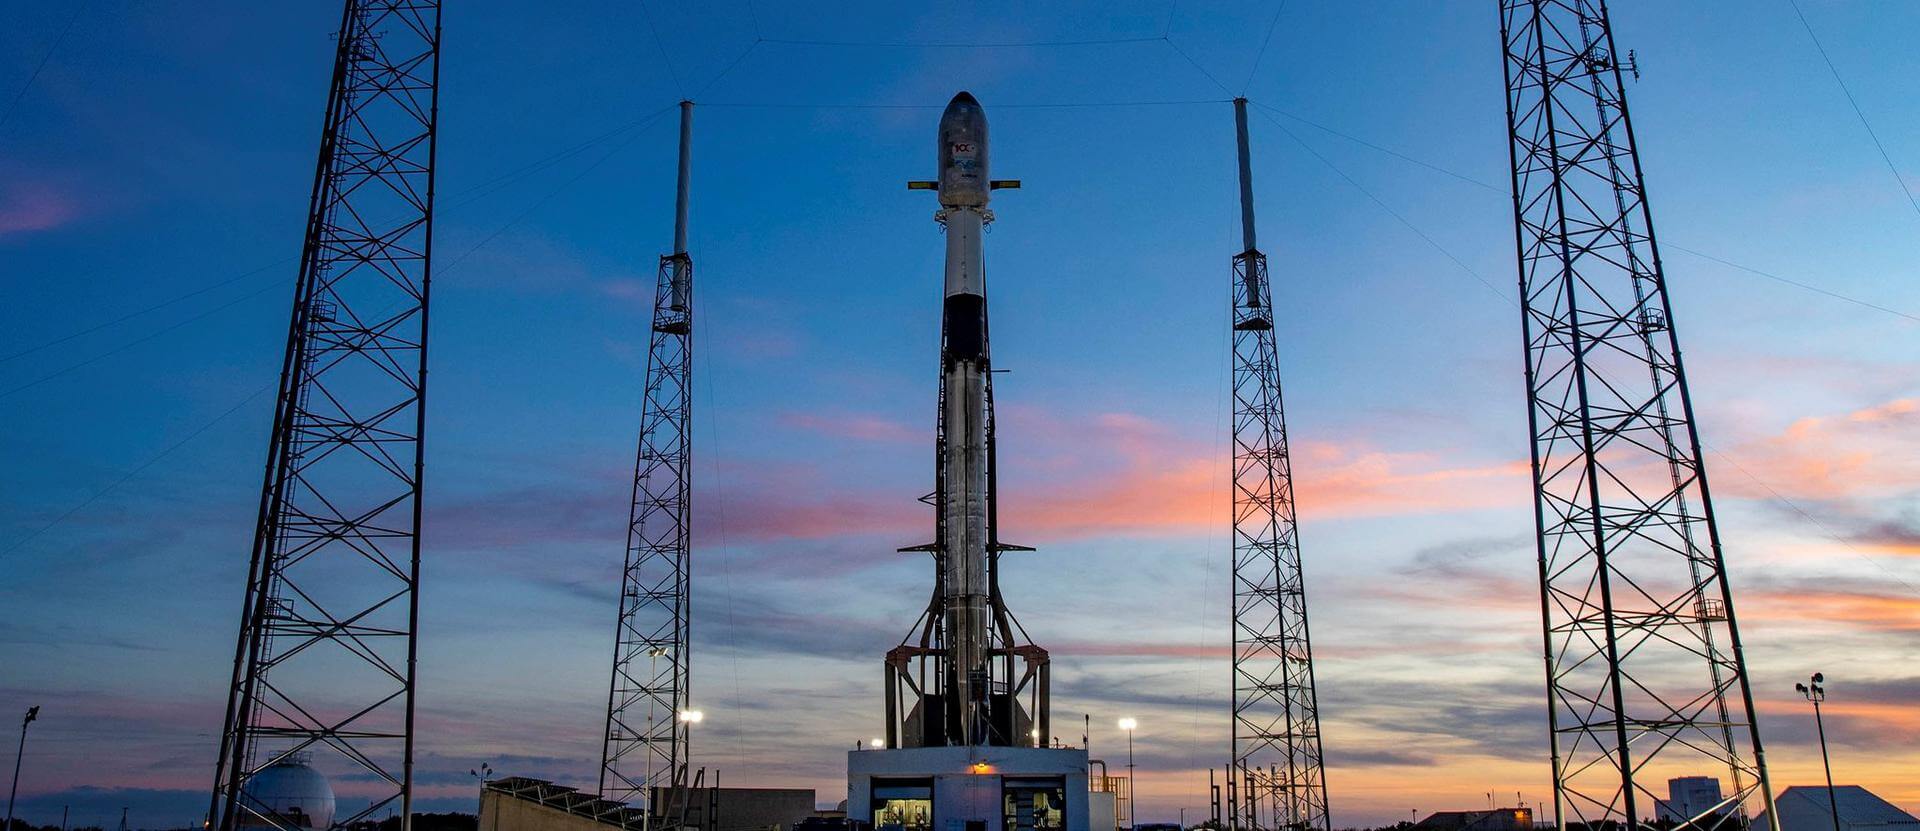 SpaceX Türksat 5B Falcon 9 Block 5 Rocket Launch